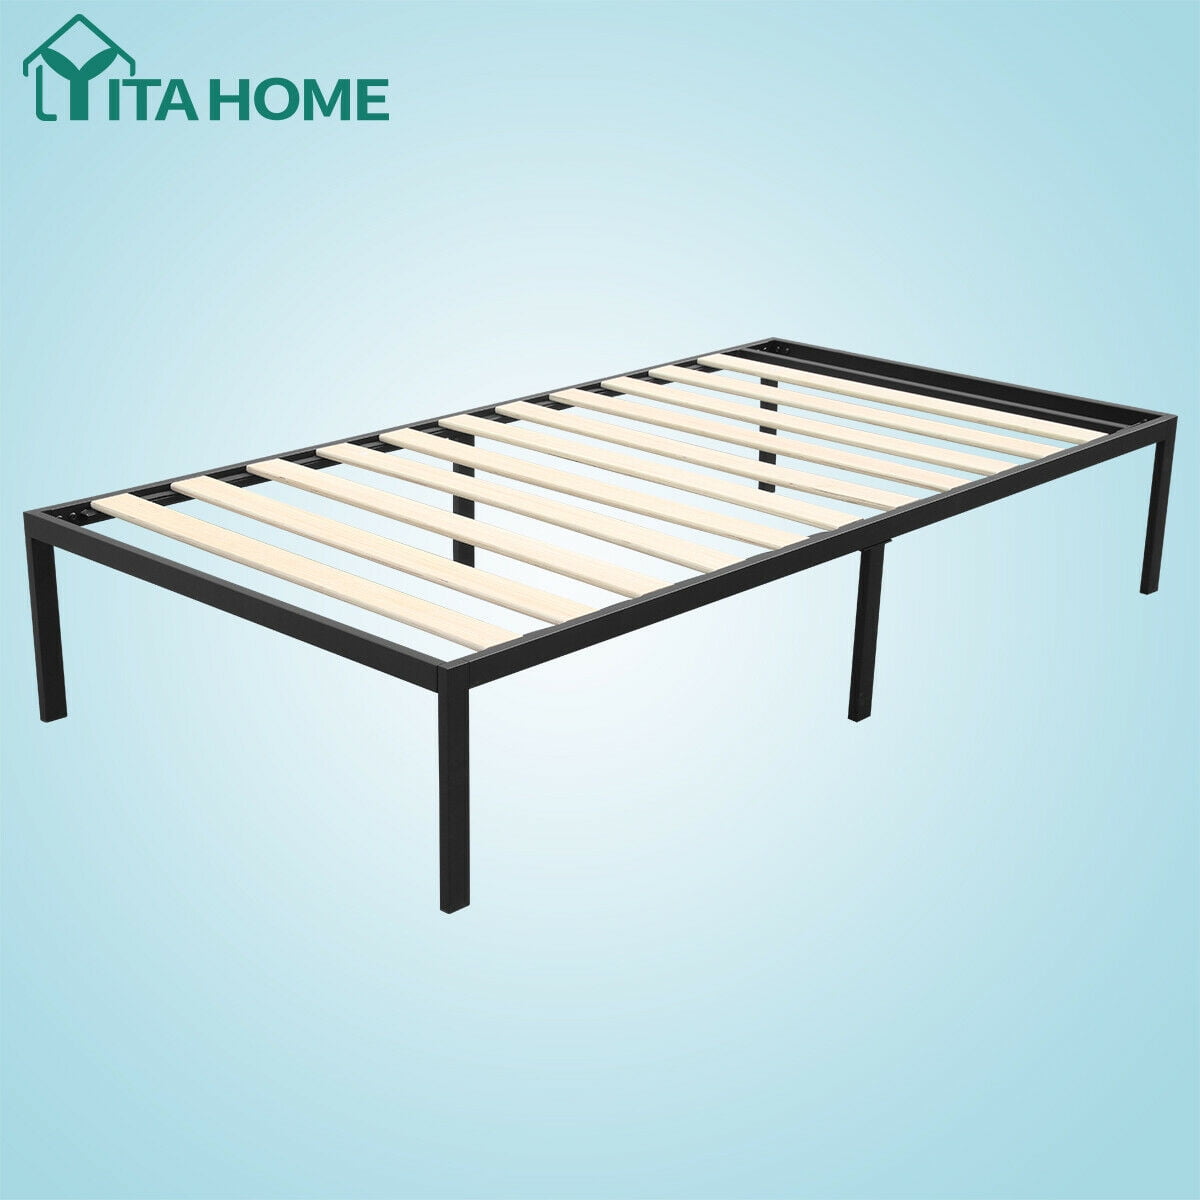 YITAHOME Queen Size Bed Frame Metal Bedroom Mattress Steel Platform Heavy Duty 